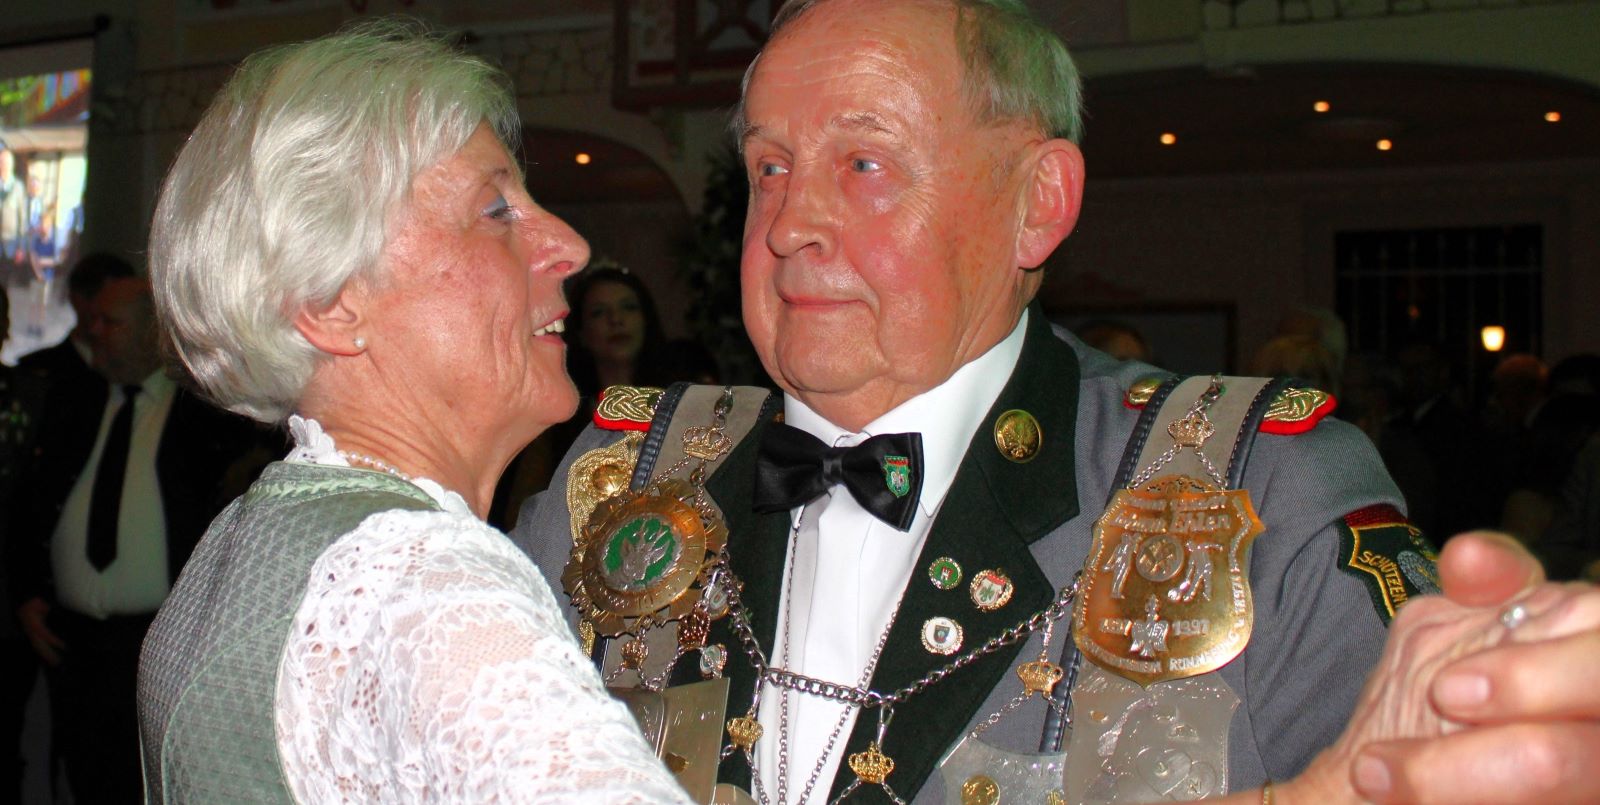 König Klaus Meyer mit Ehefrau Elke beim Ehrentanz.